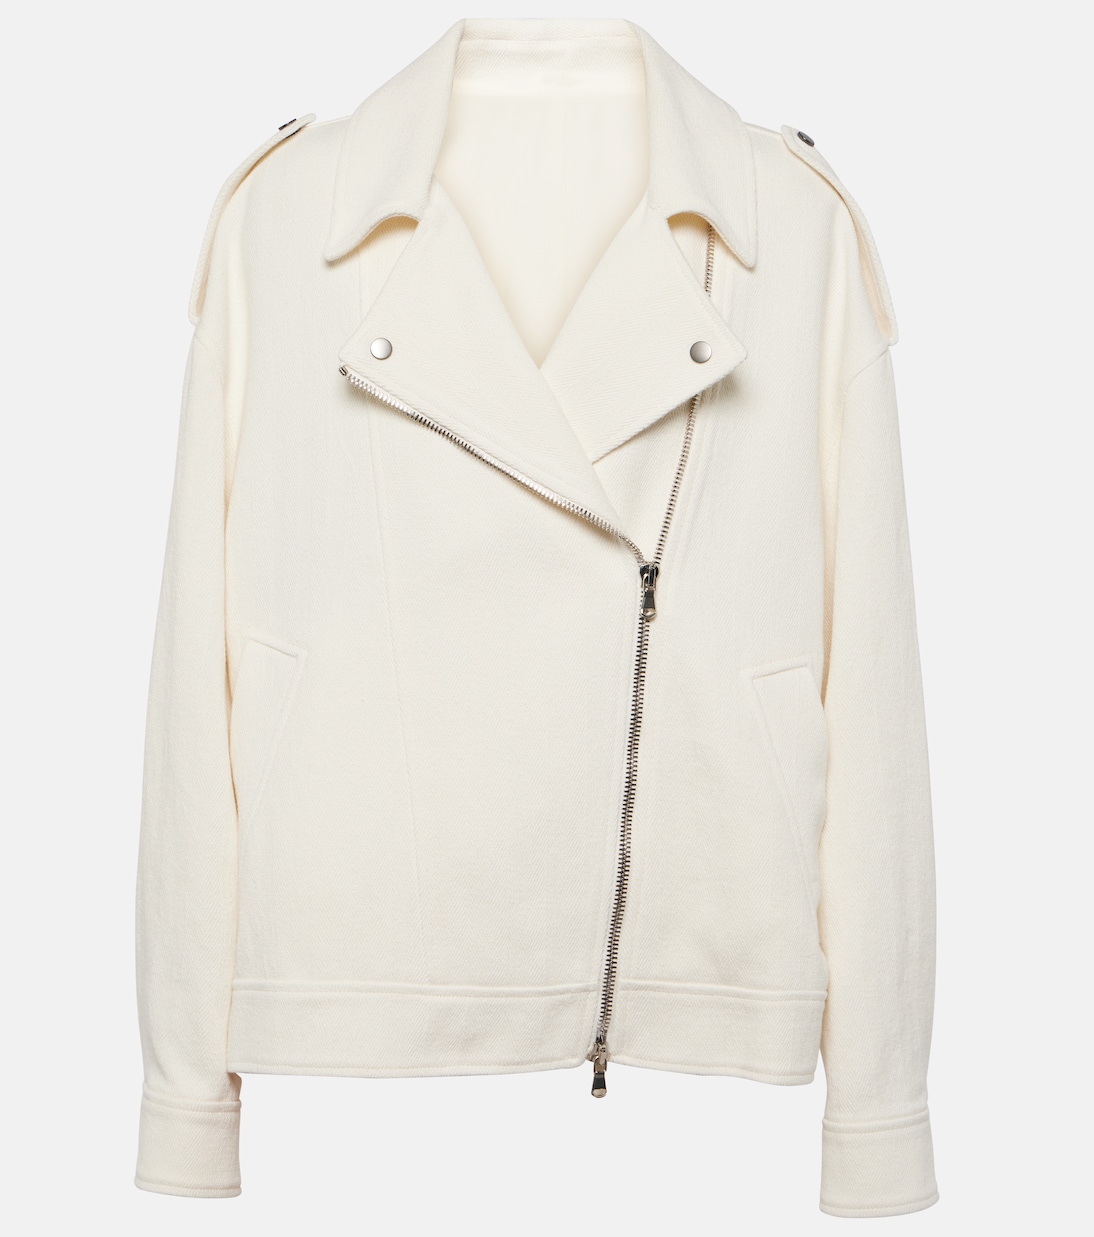 Байкерская куртка из хлопка и льна Brunello Cucinelli, белый юбка миди из хлопка и льна brunello cucinelli белый